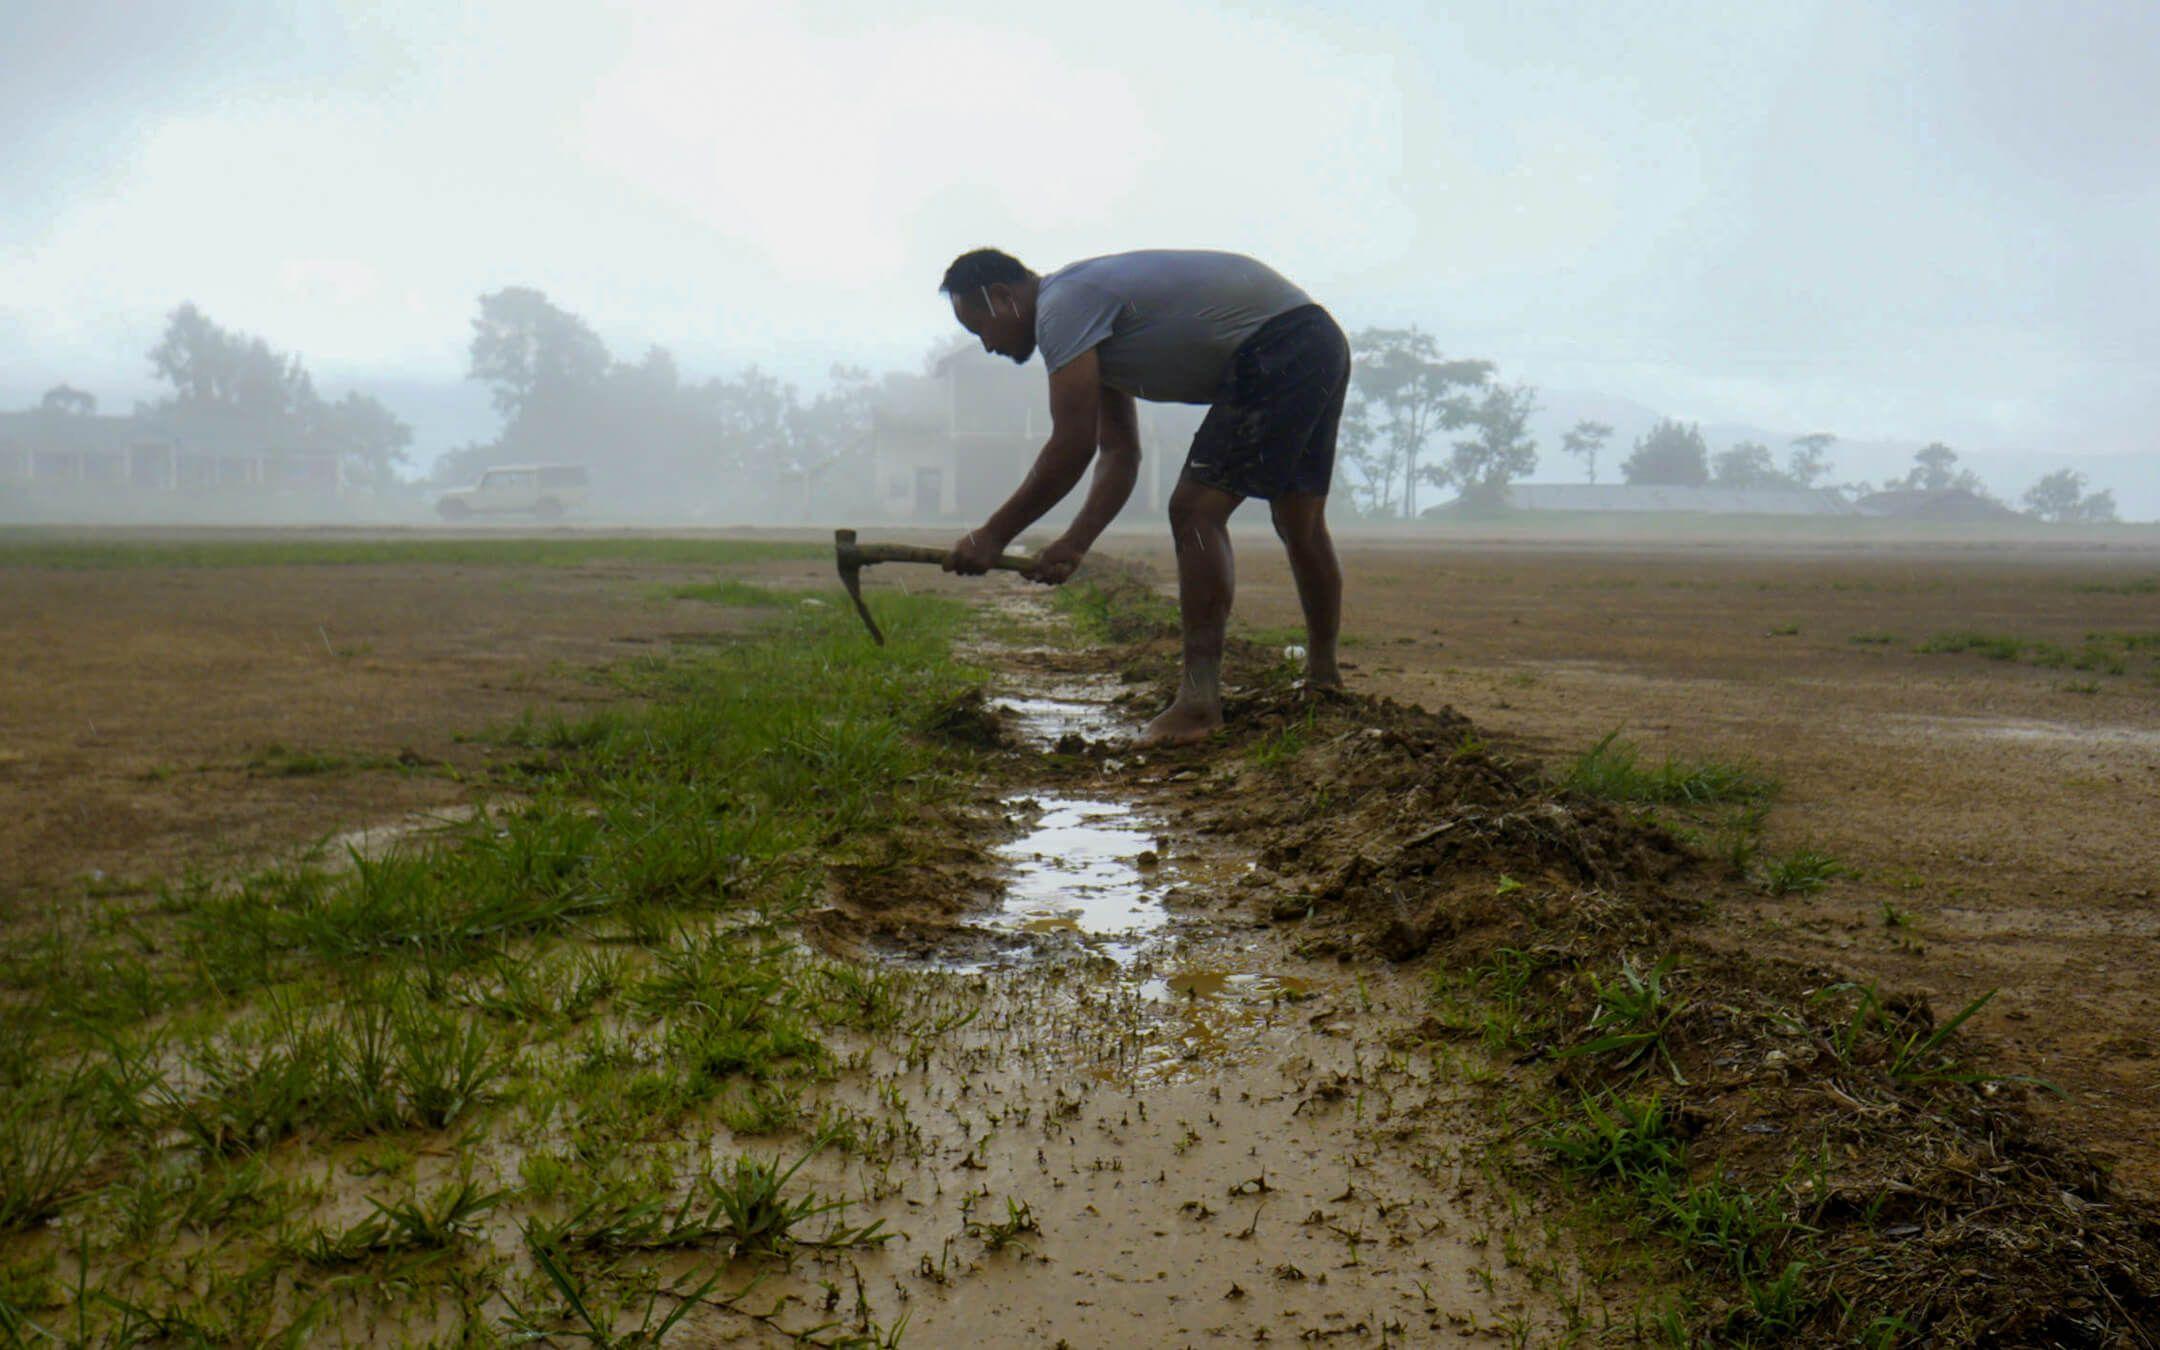  مزارع وهو يمارس تقنية روزا الزراعية المستدامة
المصدر: سوراجيت شارما